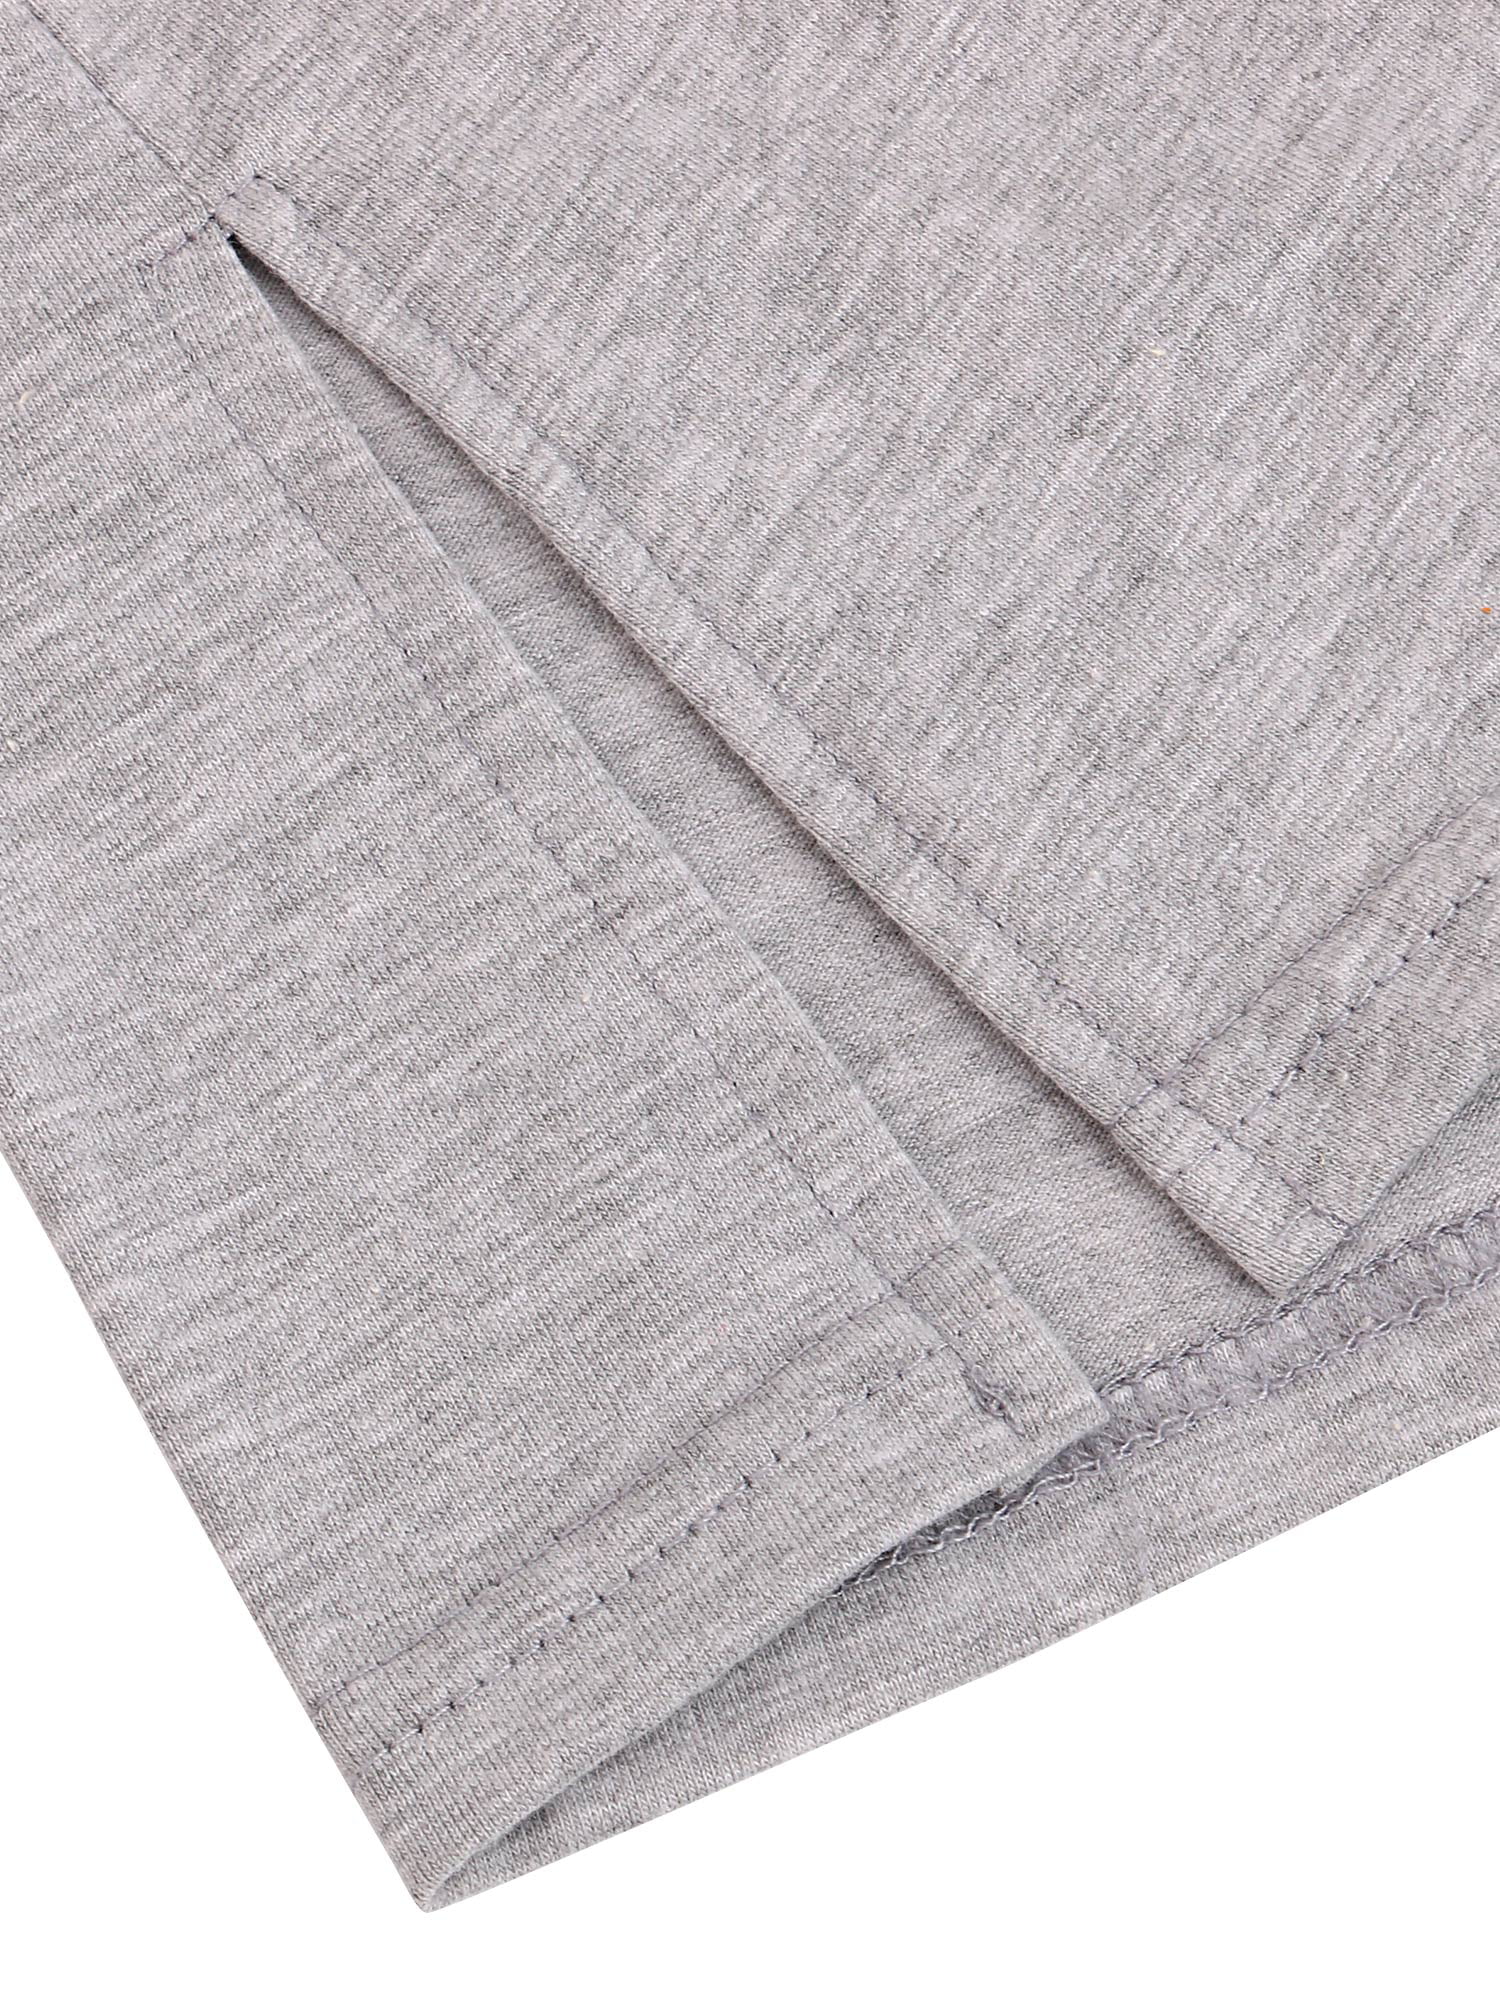 Lusofie 2 Pcs Shirt Extender for Women，Adjustable Layering Fake Top Lower  Sweep Skirt Half-Length Splitting Mini Skirt Hemline Shirt Undershirt Skirt